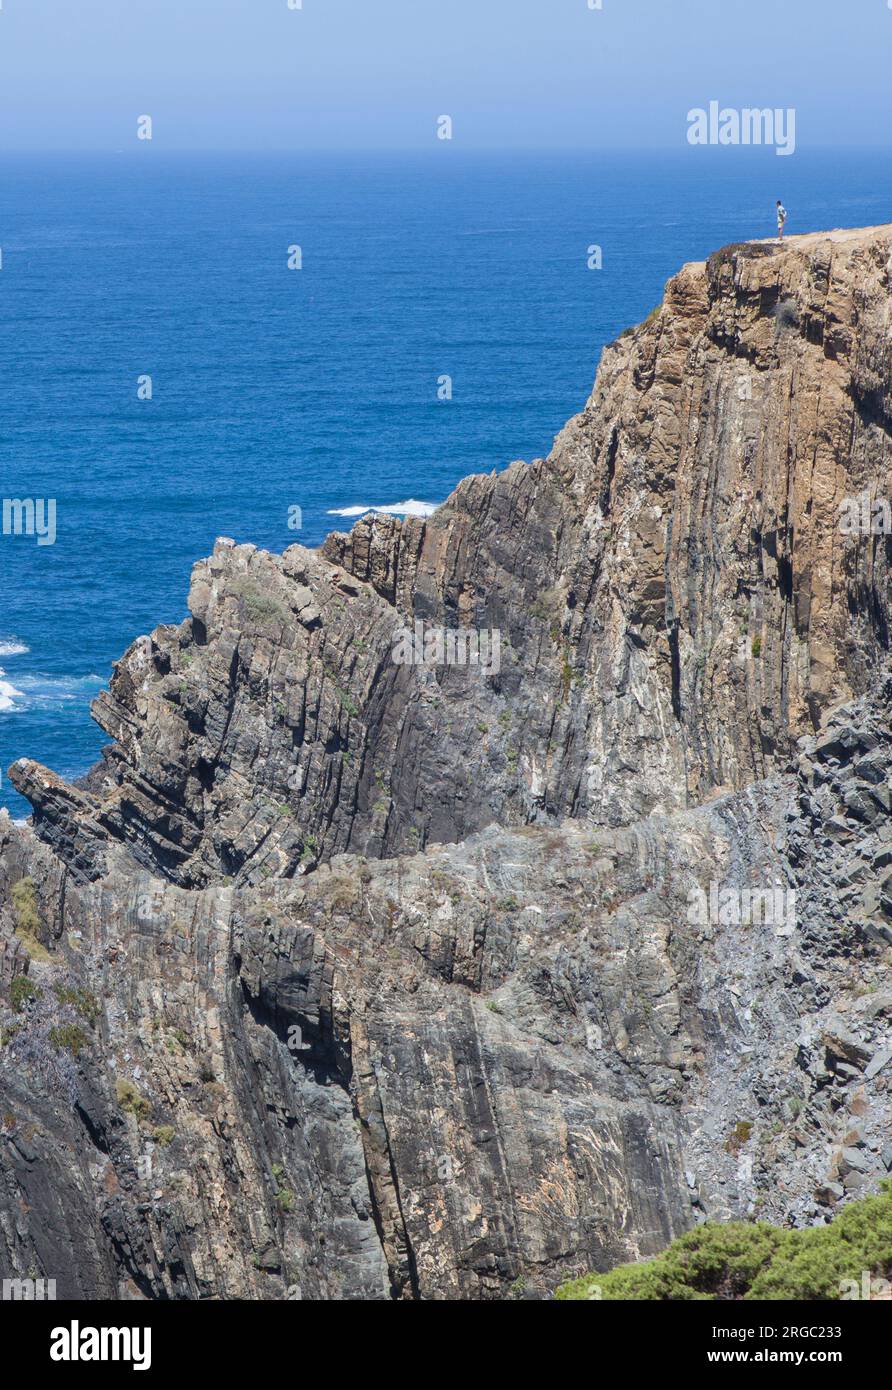 Visitatore che osserva il mare dalla cima della scogliera della costa di Cabo Sardao, Ponta do Cavaleiro, Sao Teotonio, Portogallo Foto Stock